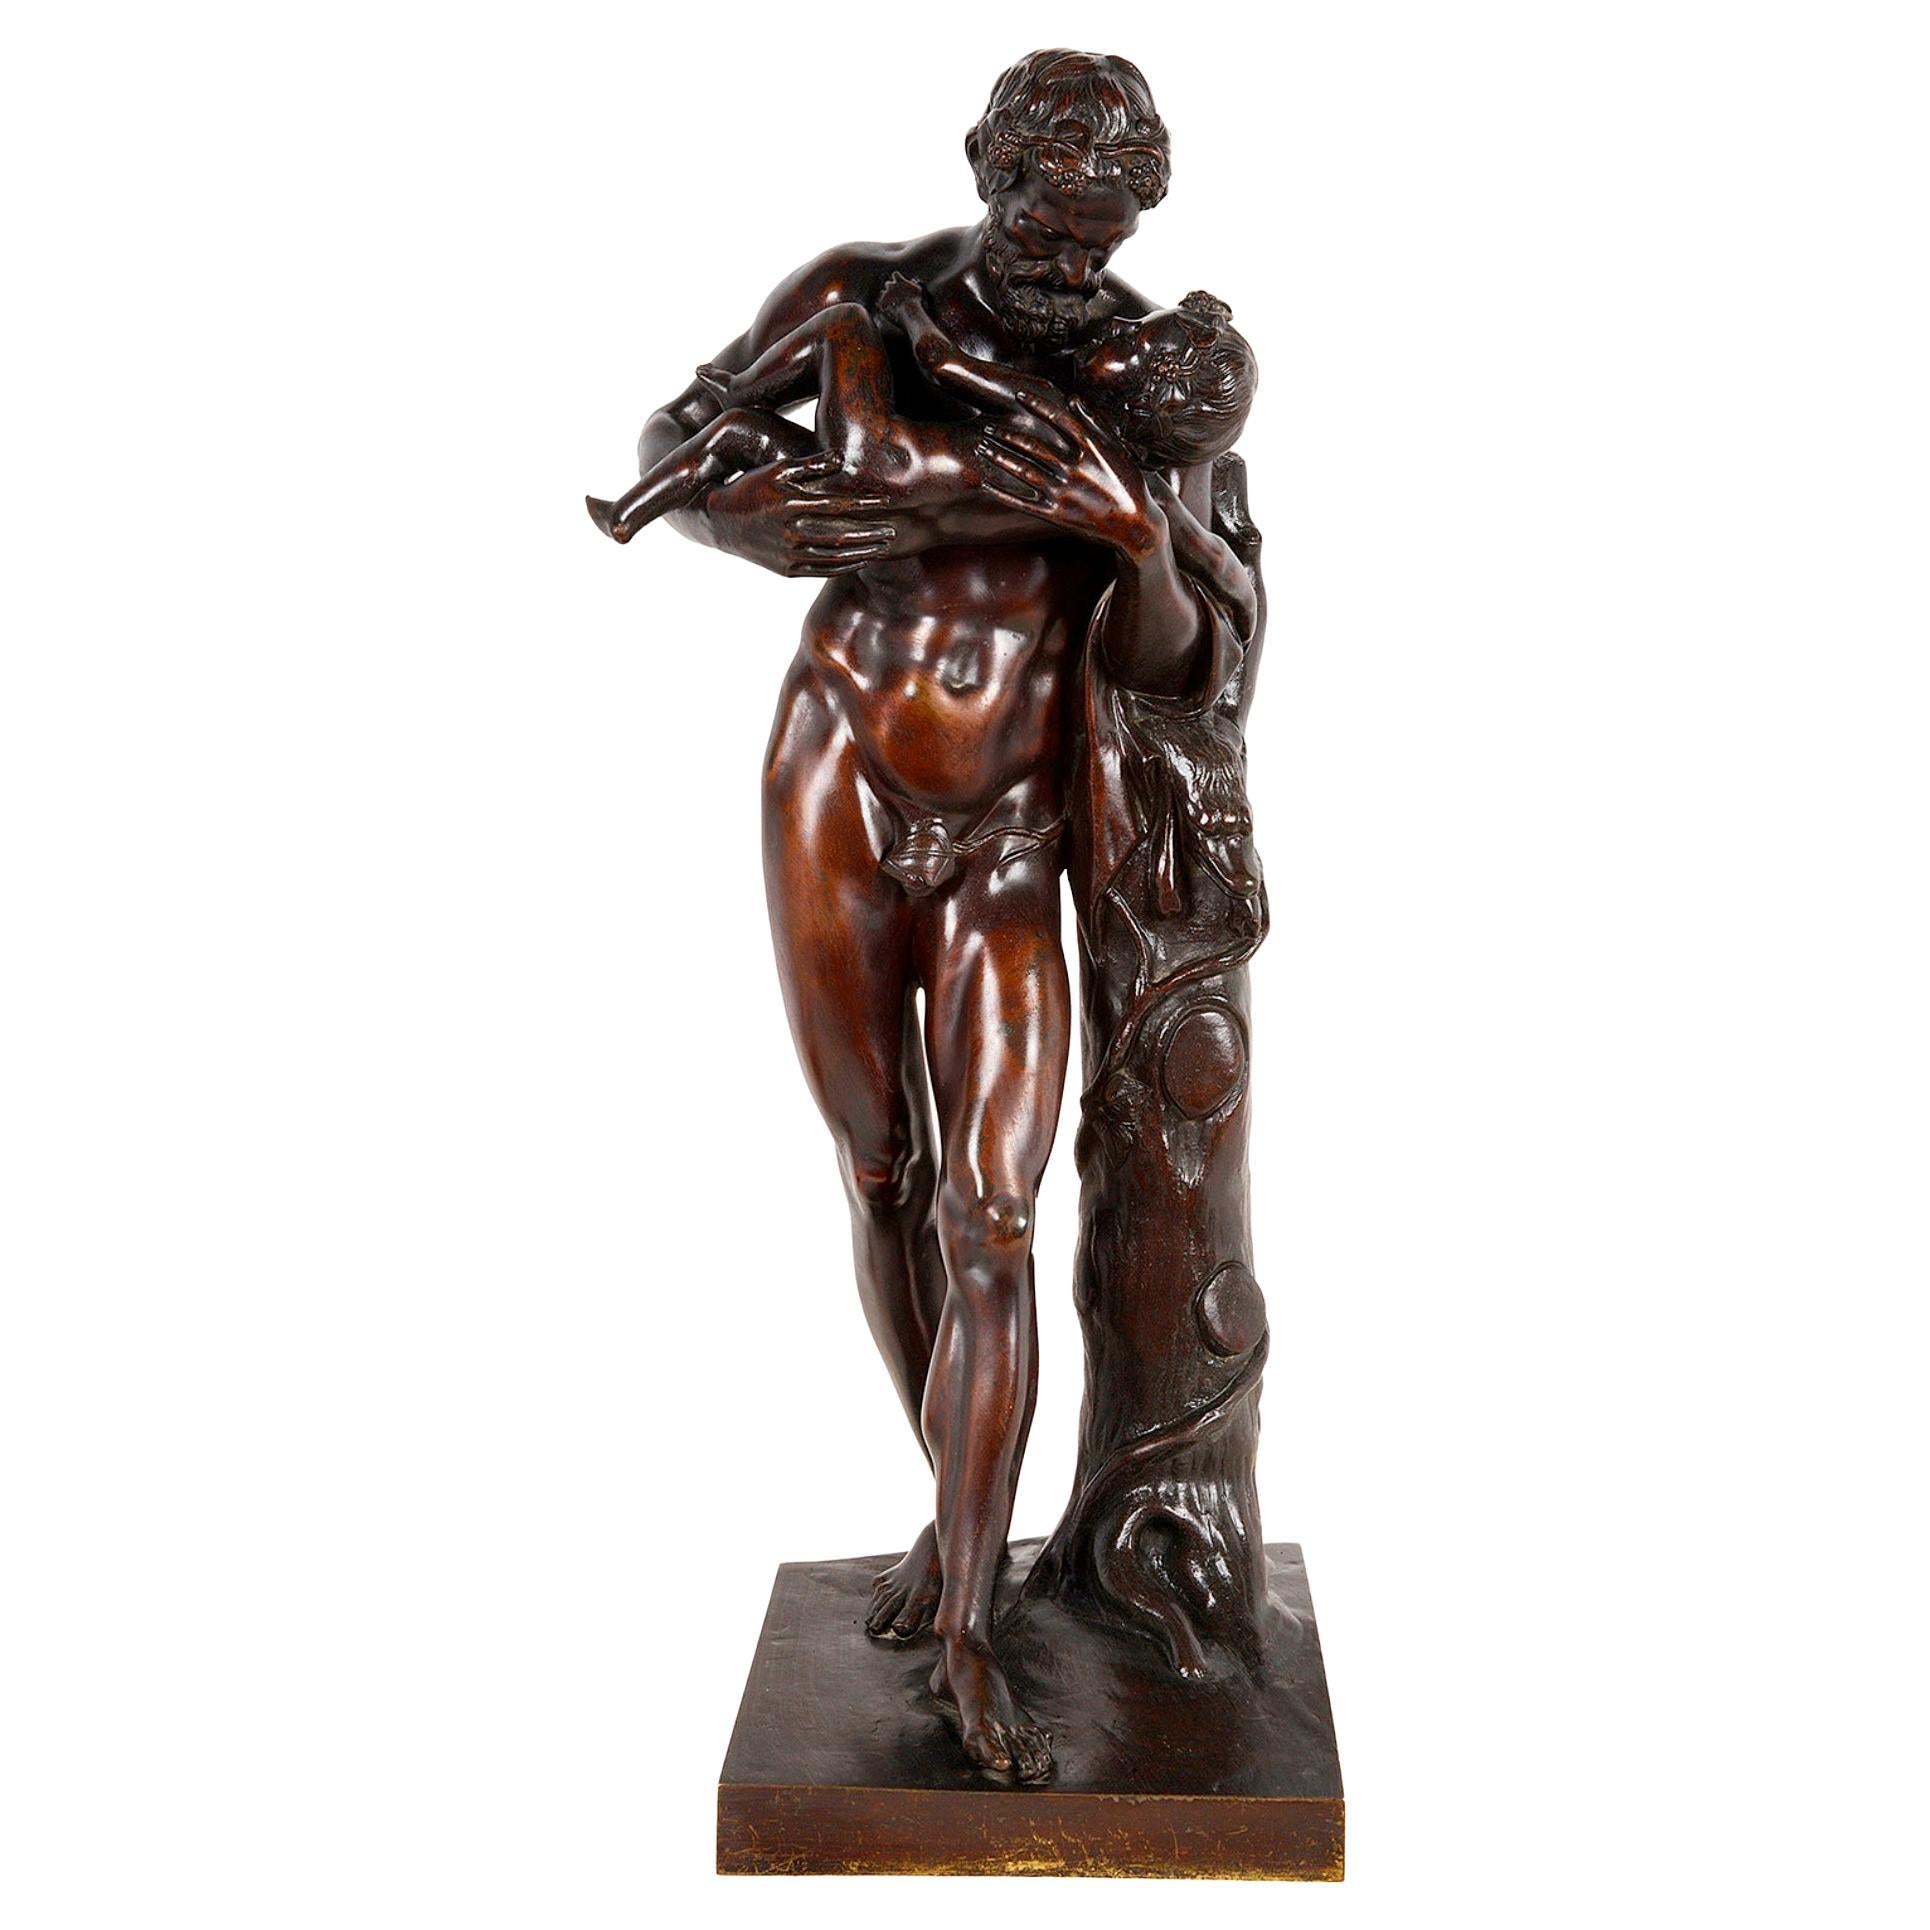 Grant Tour, Bronzestatue des Silenus, der den kleinen Dionysos umklammert, 19. Jahrhundert